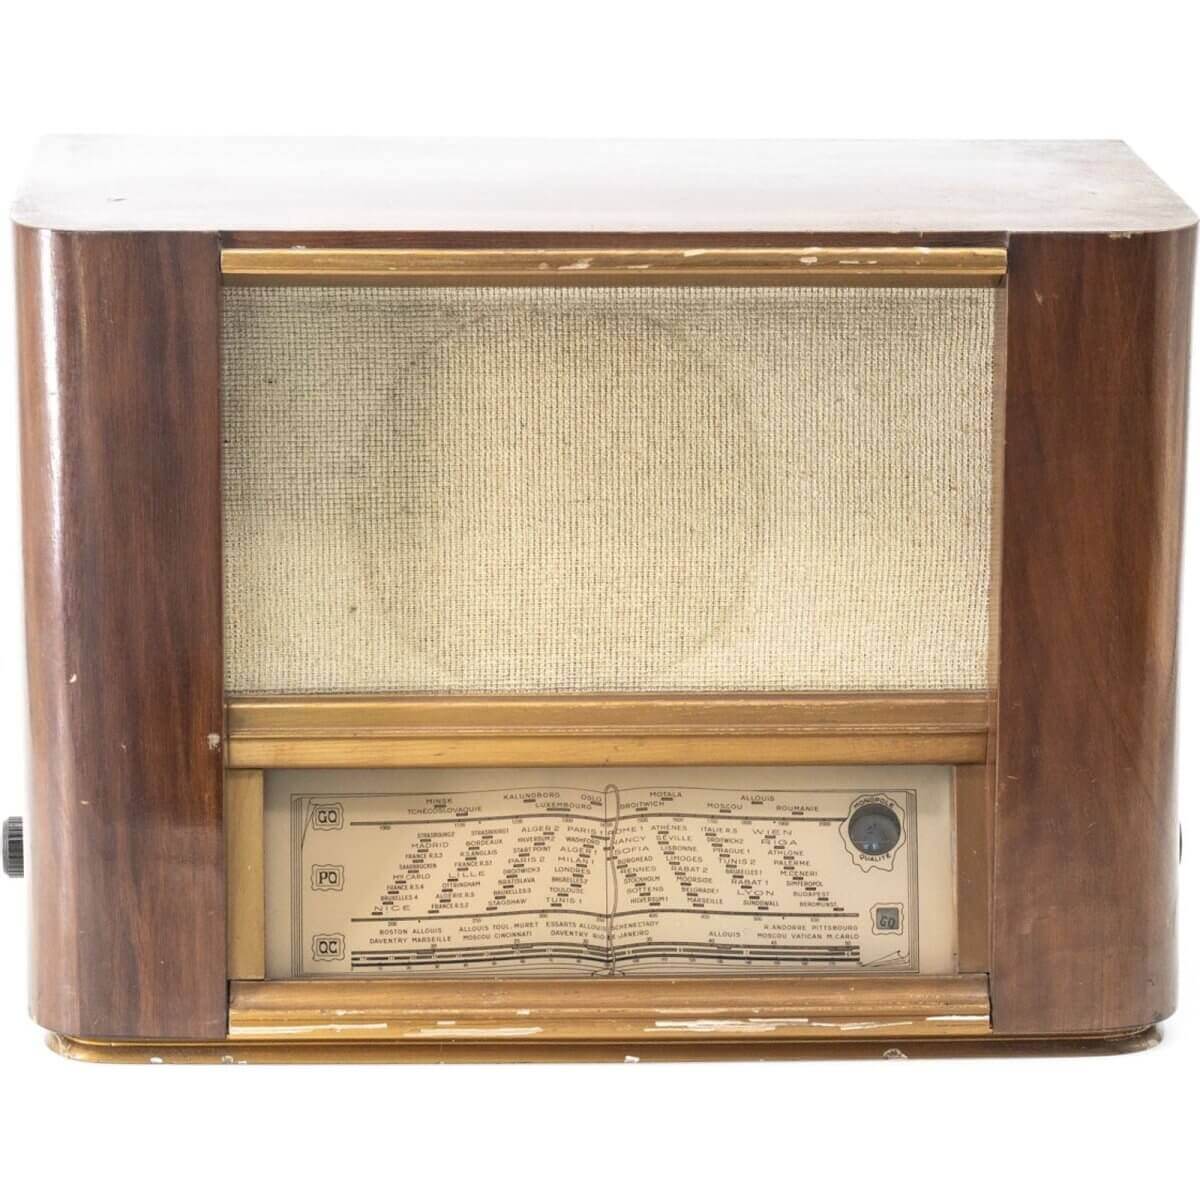 Radio Bluetooth Artisanale Vintage 50’S-A.bsolument-enceintes-et-radios-vintage-bluetooth